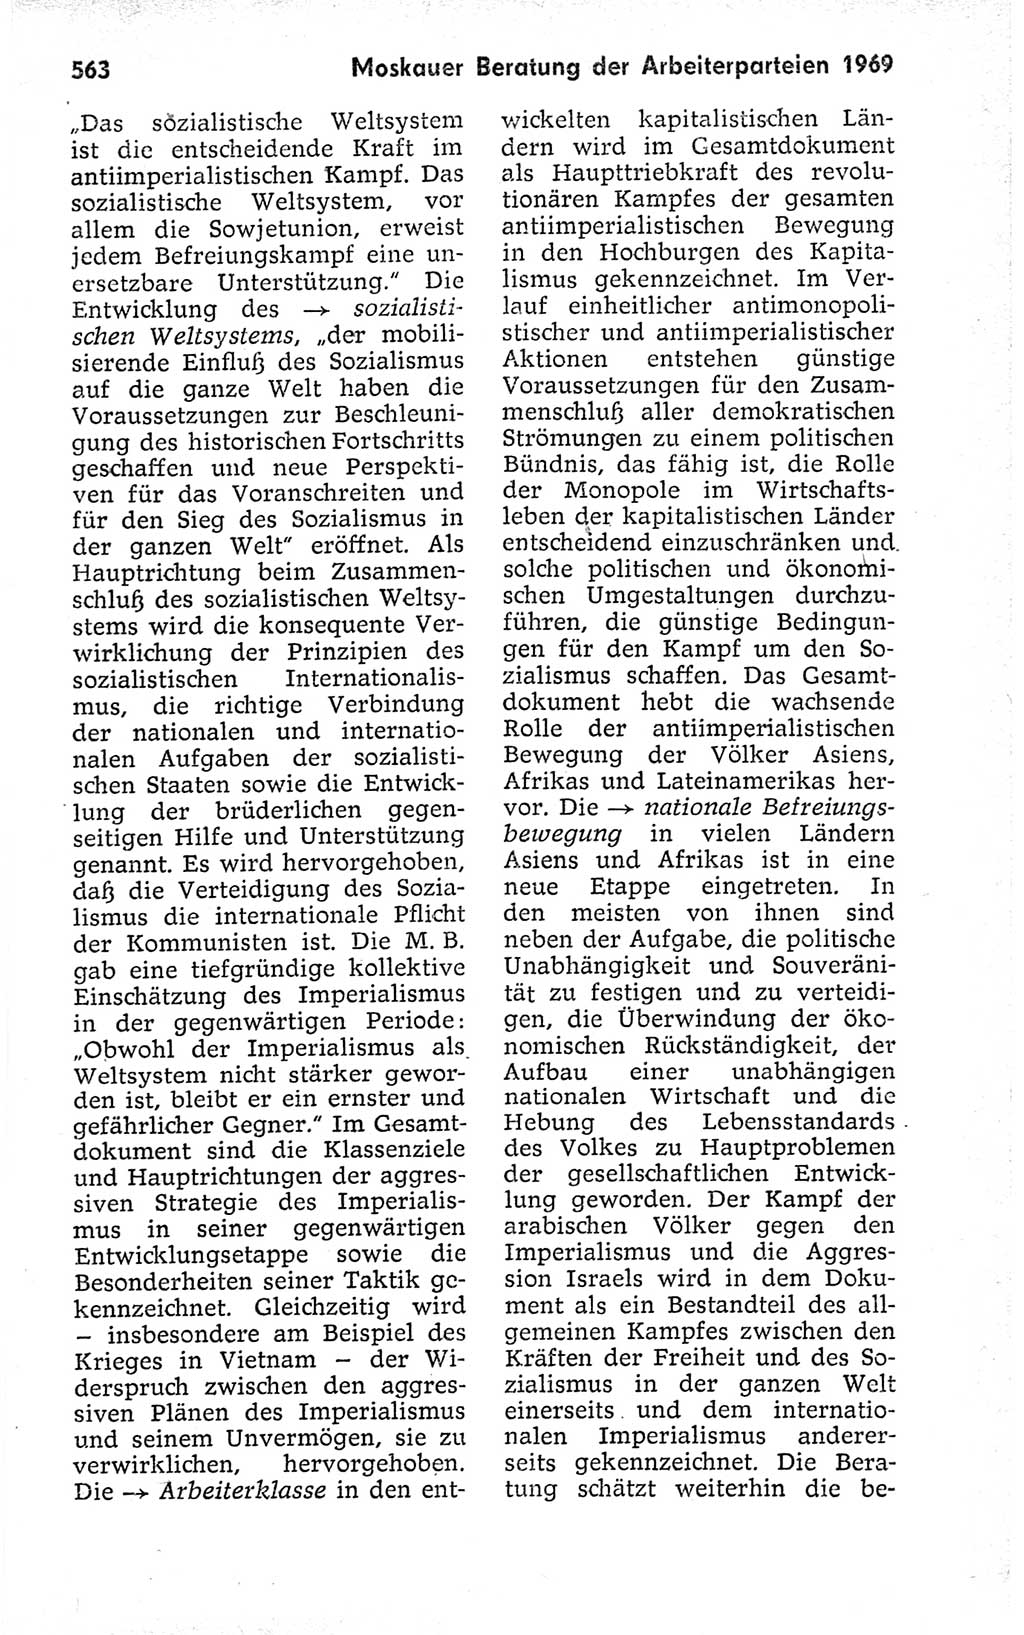 Kleines politisches Wörterbuch [Deutsche Demokratische Republik (DDR)] 1973, Seite 563 (Kl. pol. Wb. DDR 1973, S. 563)